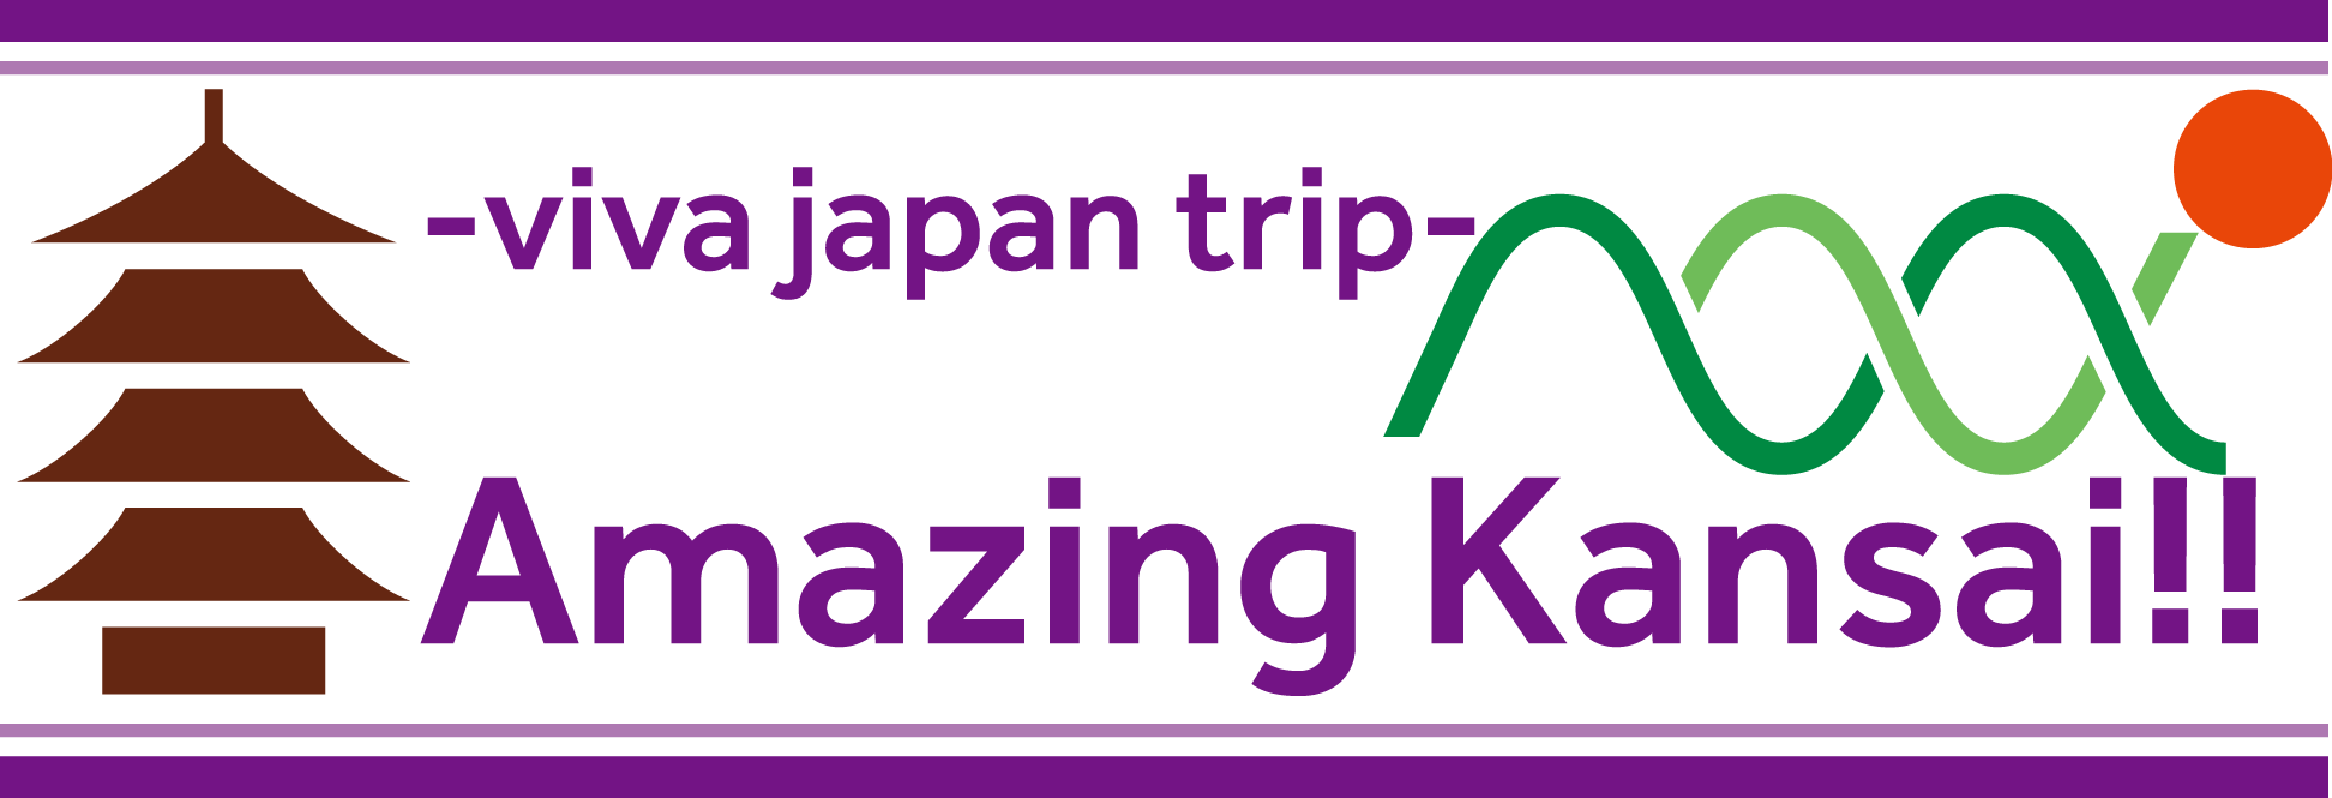 Amazing Japan/Kansai！-viva japan trip-